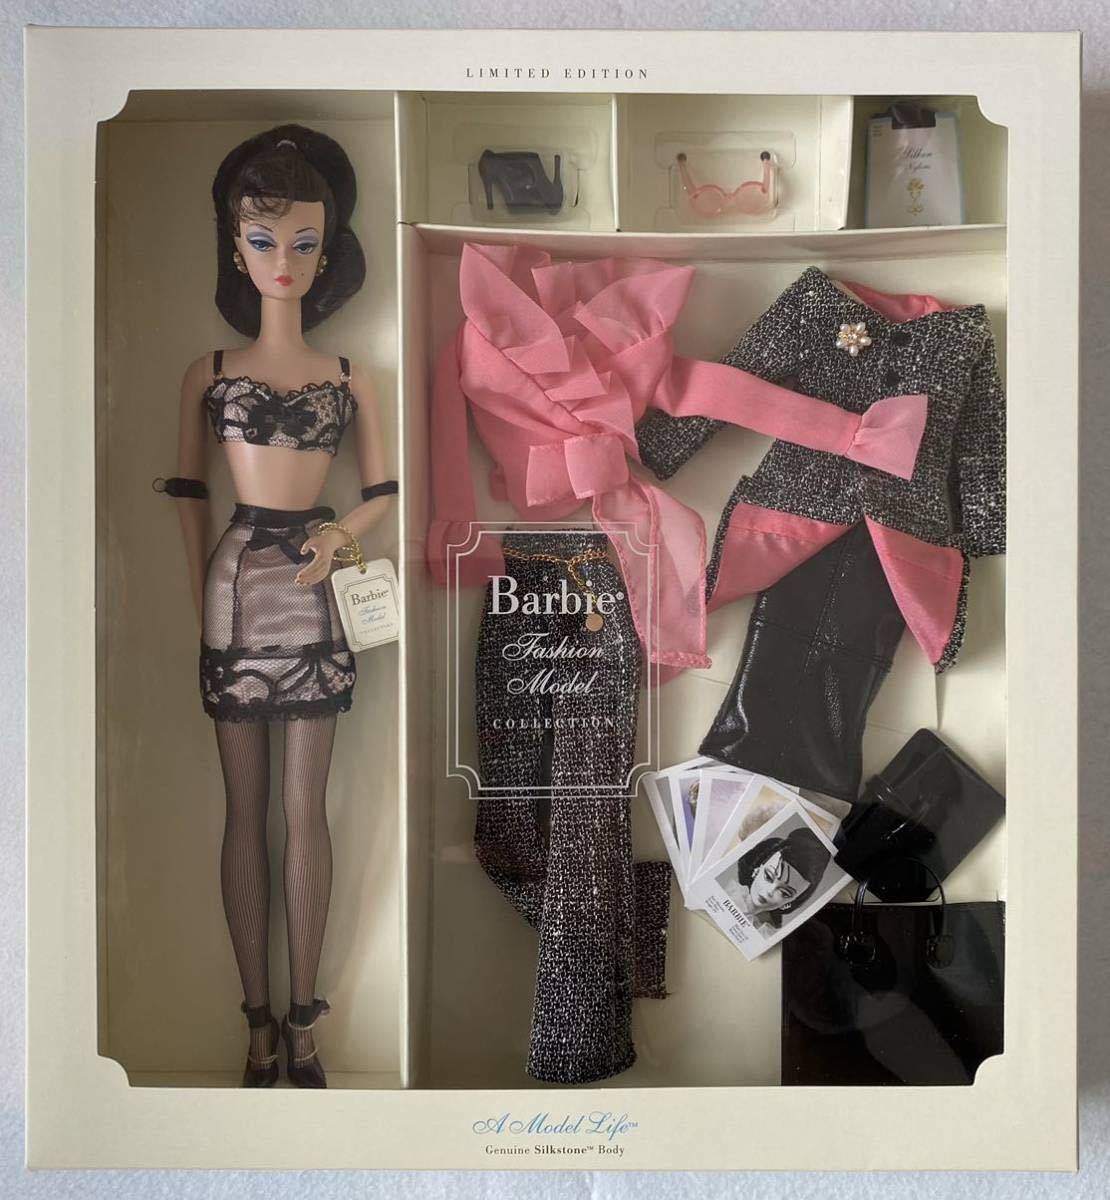 バービー 人形 ファッションモデル A Model Life